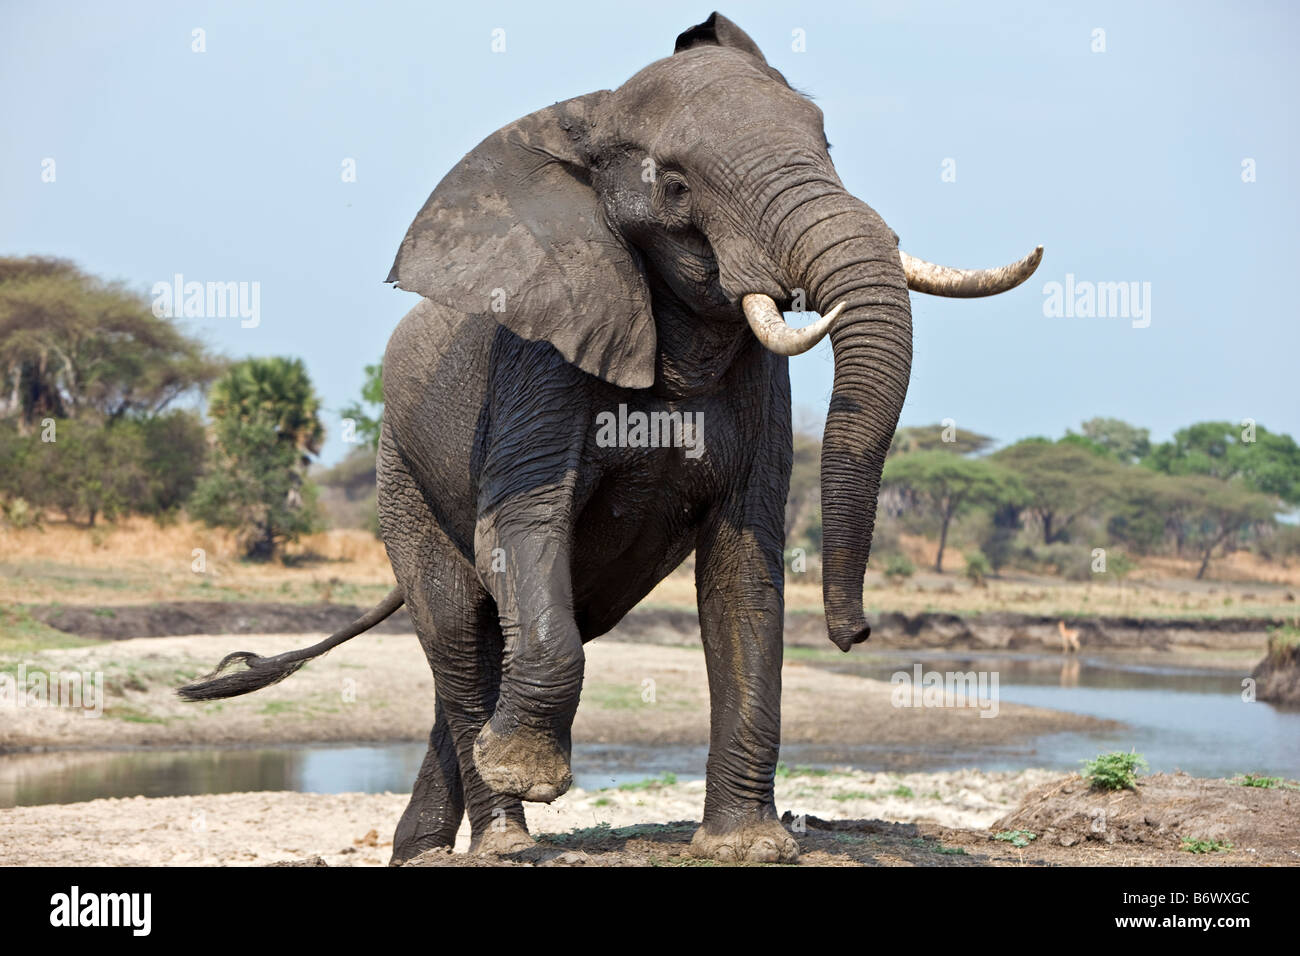 La Tanzanie, le Parc National de Katavi. Un éléphant affiche l'agression. Banque D'Images